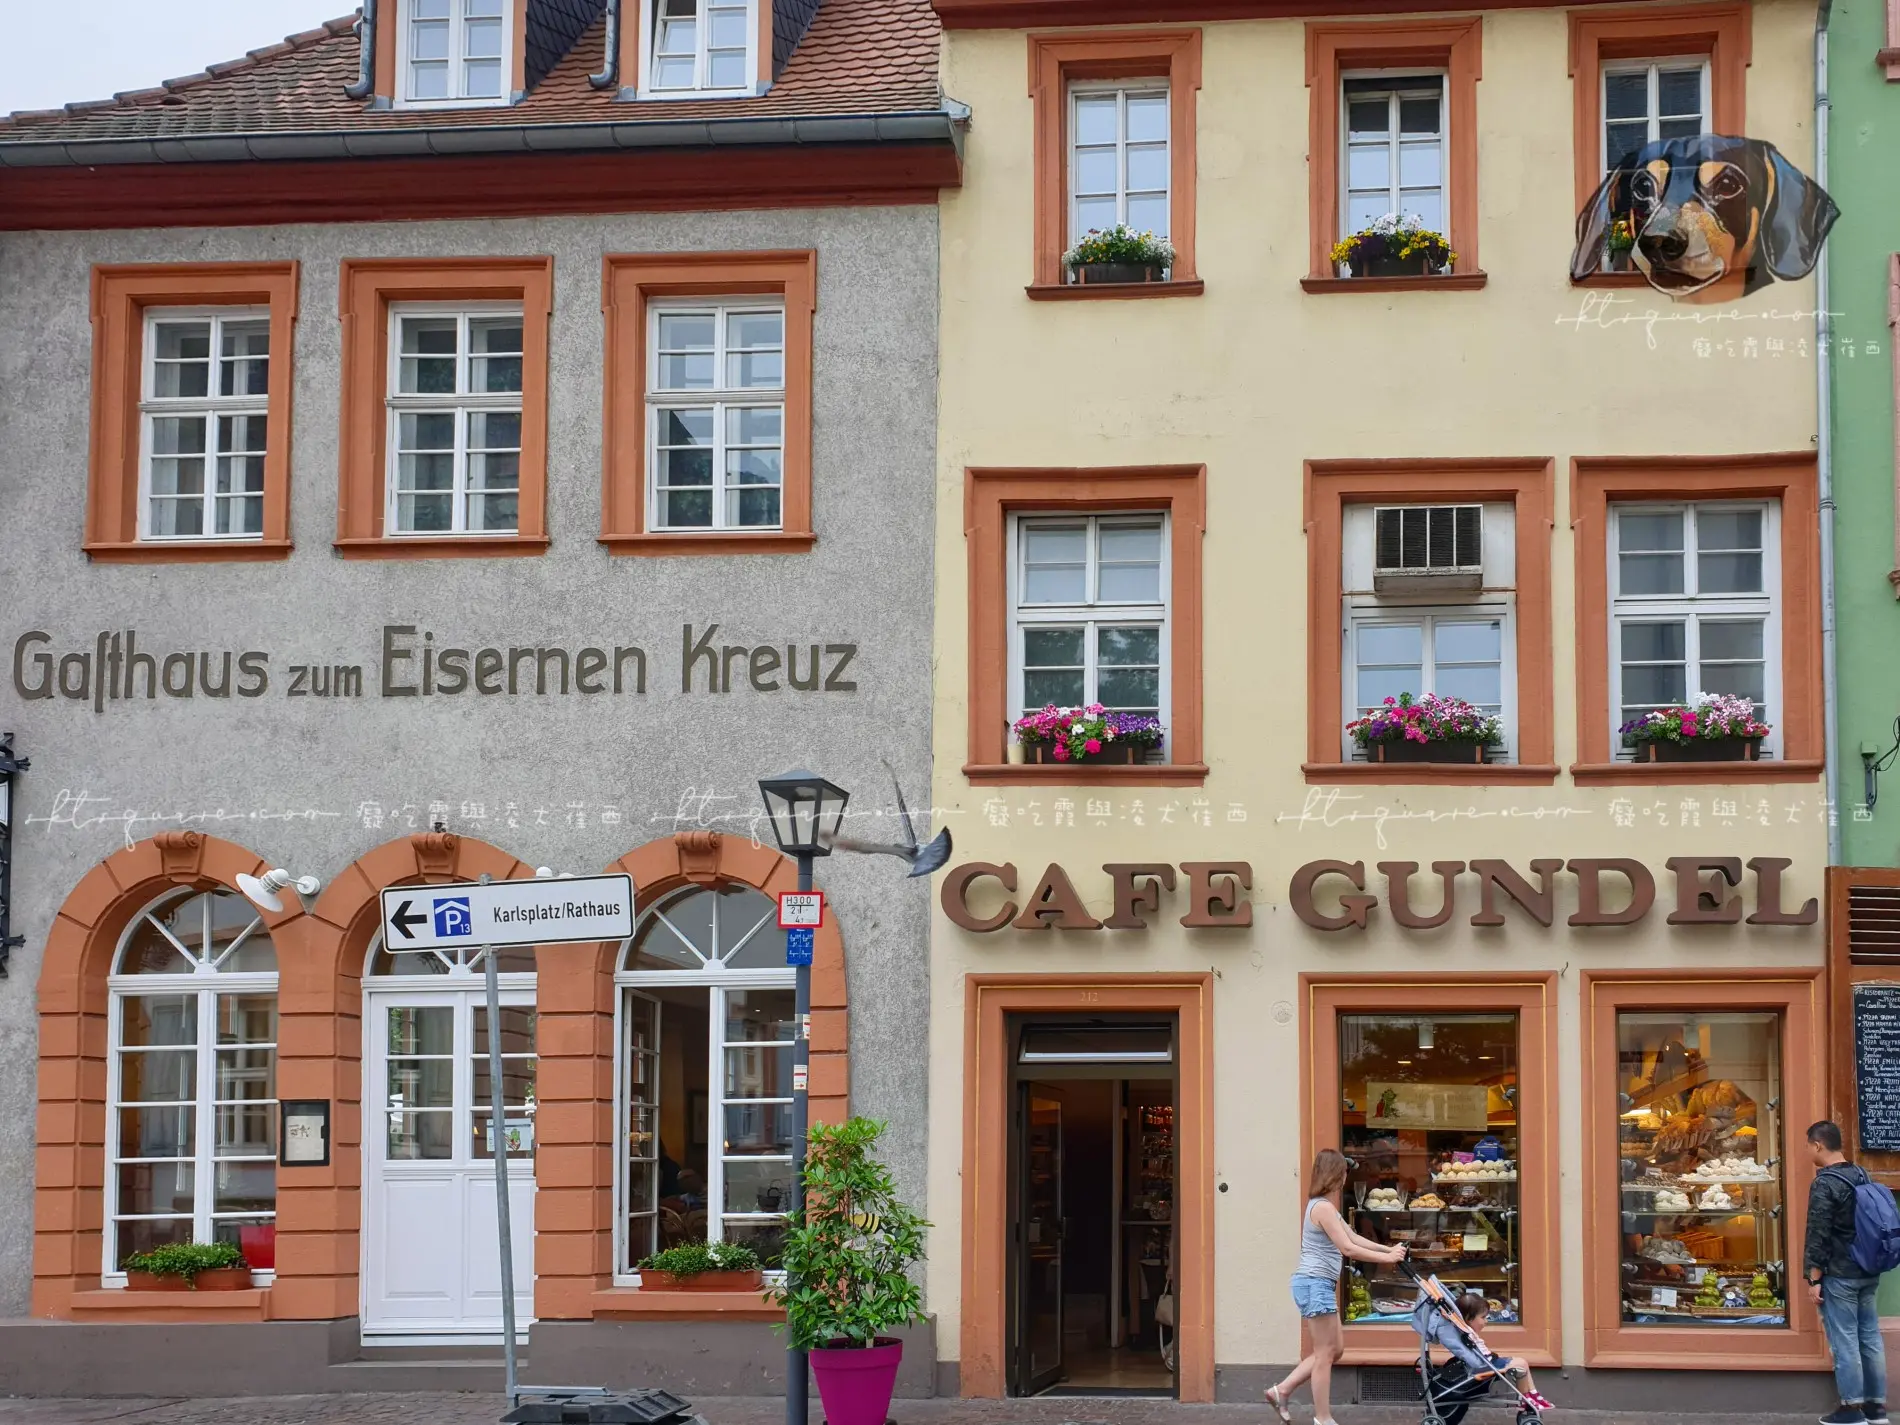 德國 海德堡 Café Gundel－店面外觀